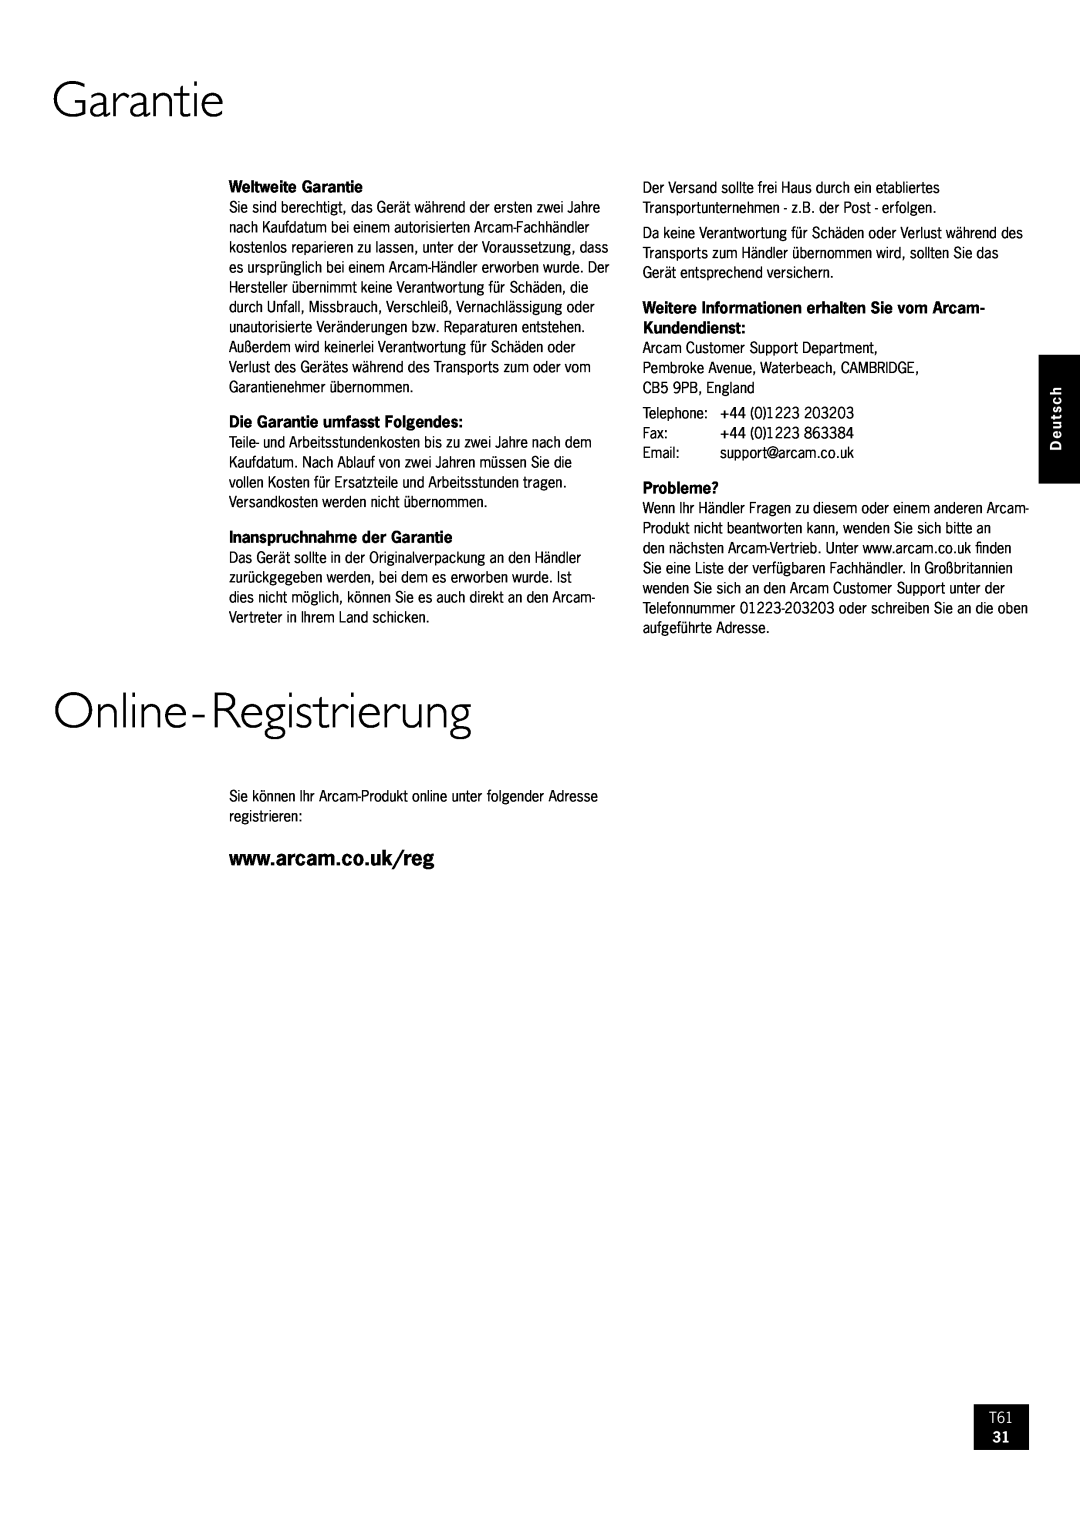 Arcam AM/FM Tuner T61 manual Online-Registrierung, Garantie, Deutsch 